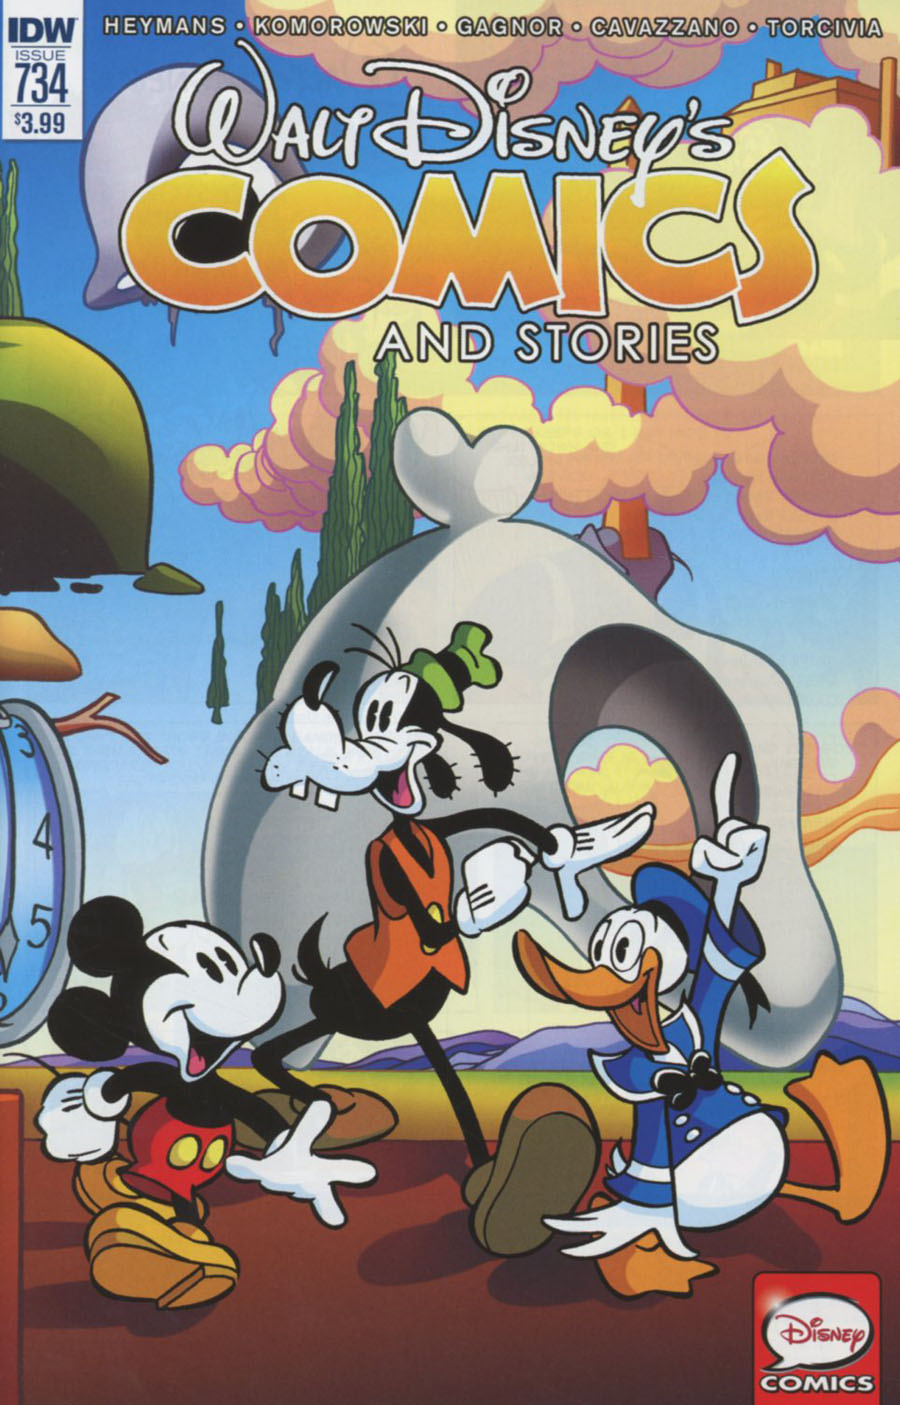 Walt Disneys Comics & Stories #734 Cover A Regular Giorgio Cavazzano Cover